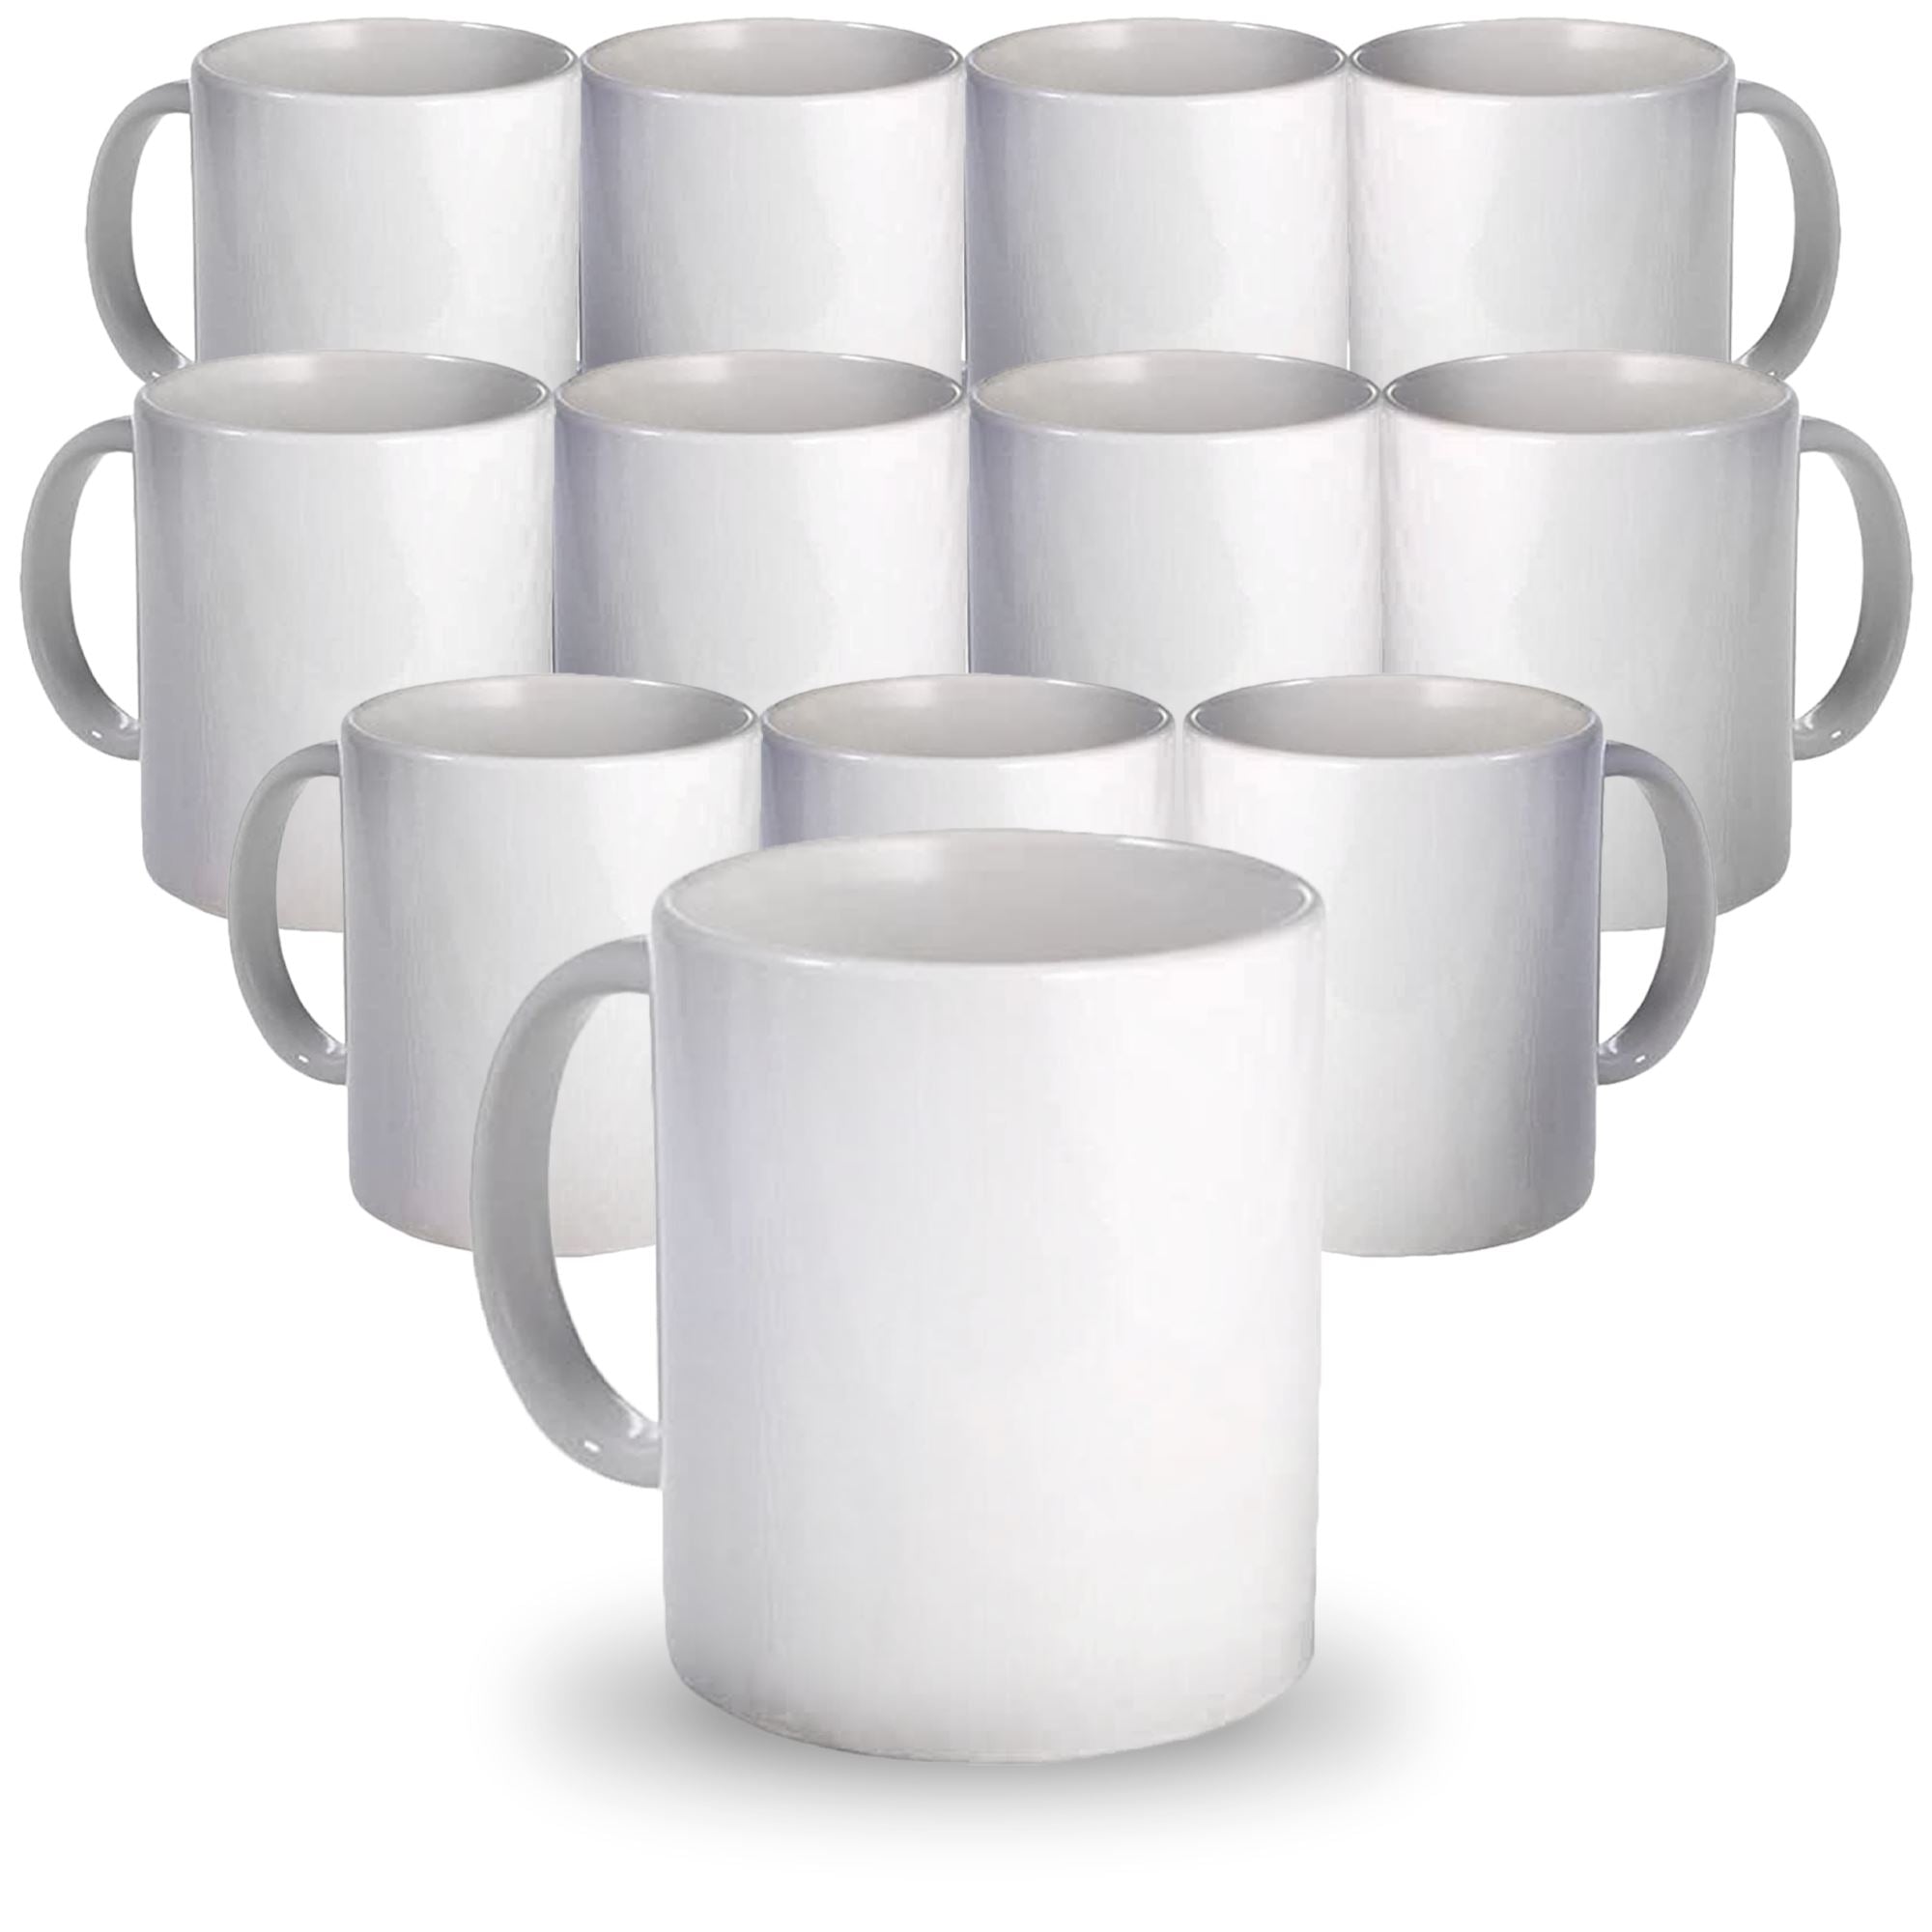 Sublimation Mugs - 11 Oz Sublimation White Mug Wholesaler from Thane